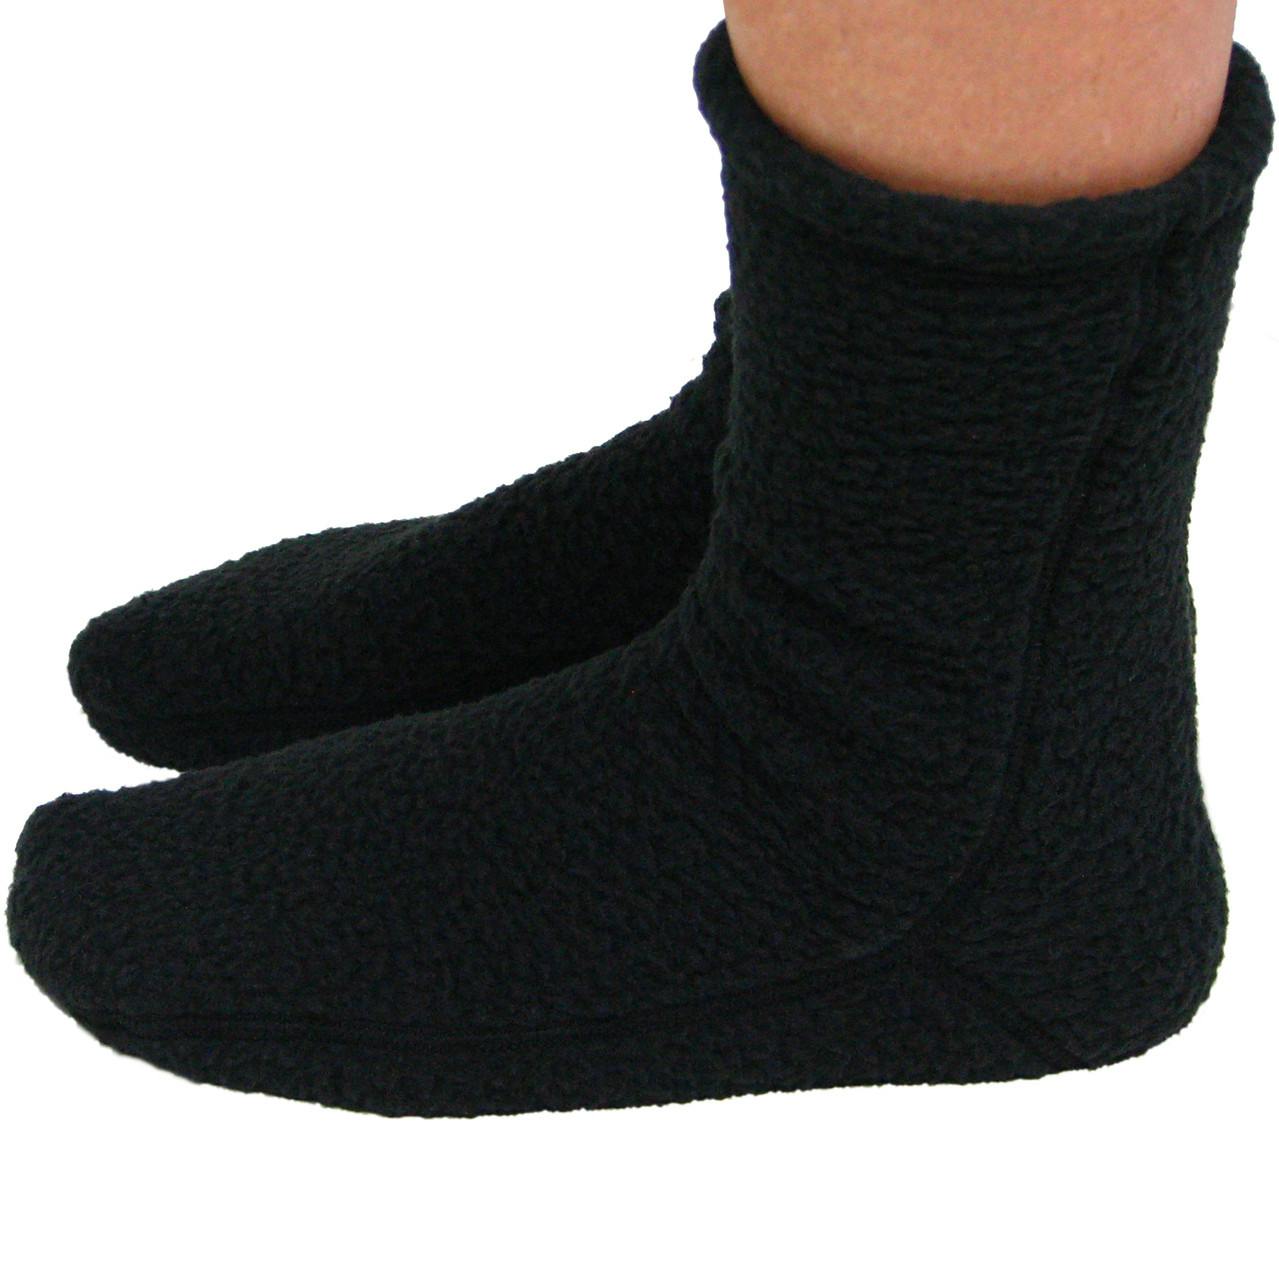 Fleece Socks Super Soft Black